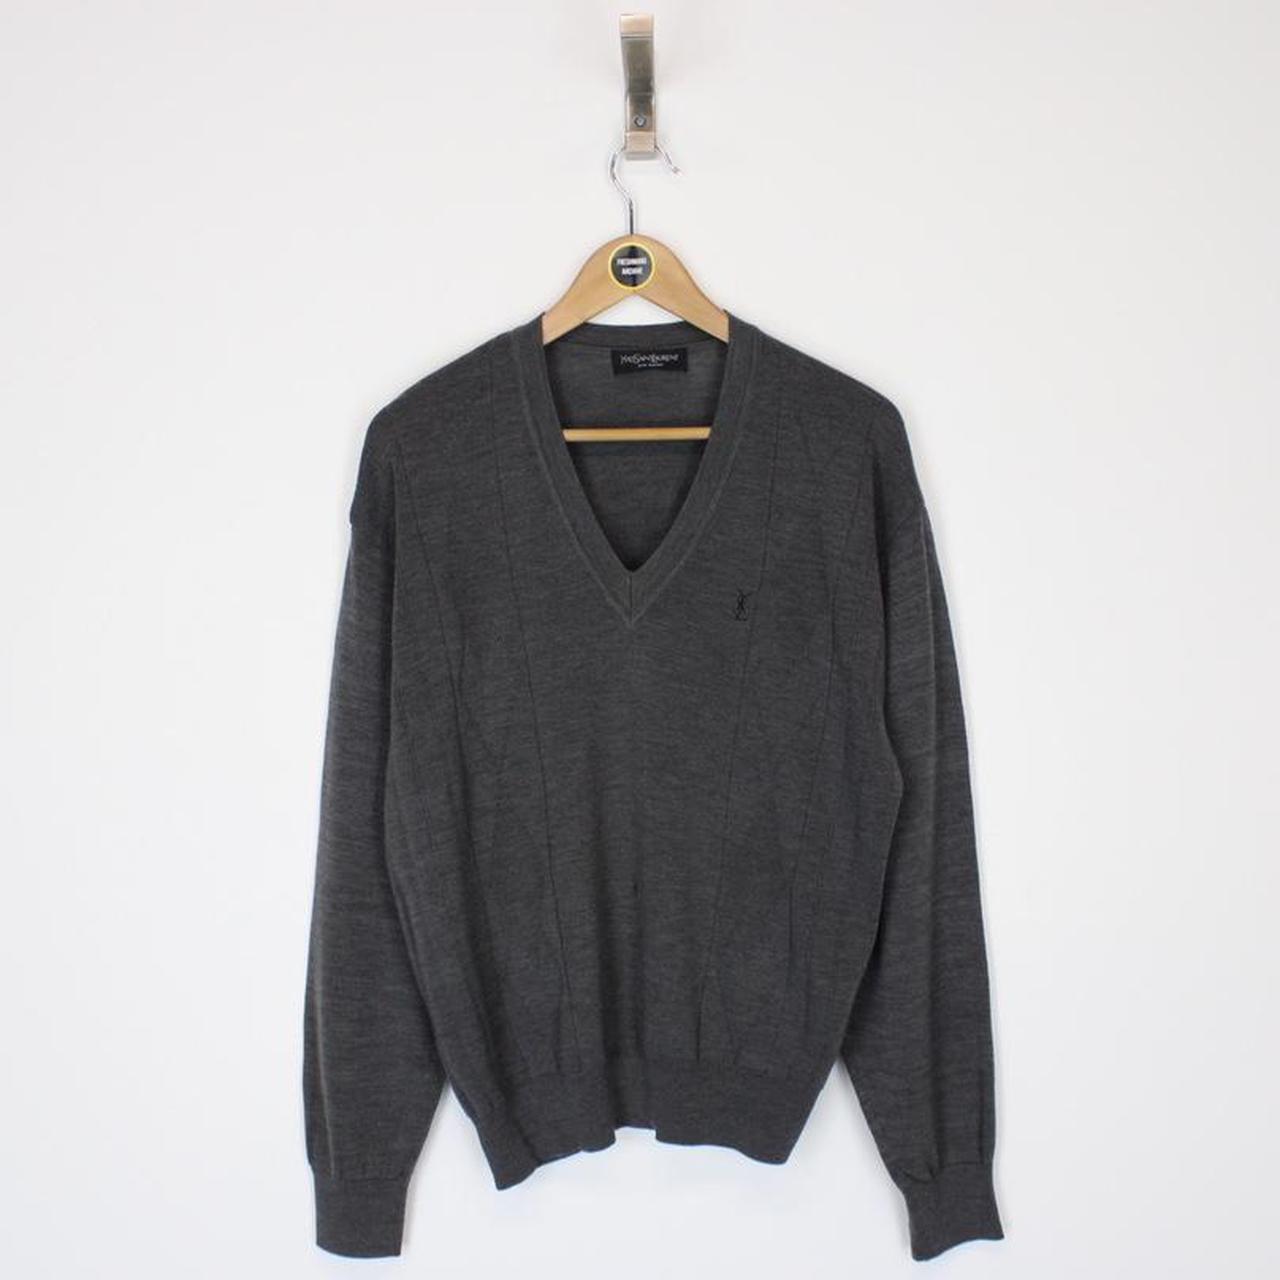 Vintage 90’s Yves Saint Laurent Grey Pullover Knit... - Depop